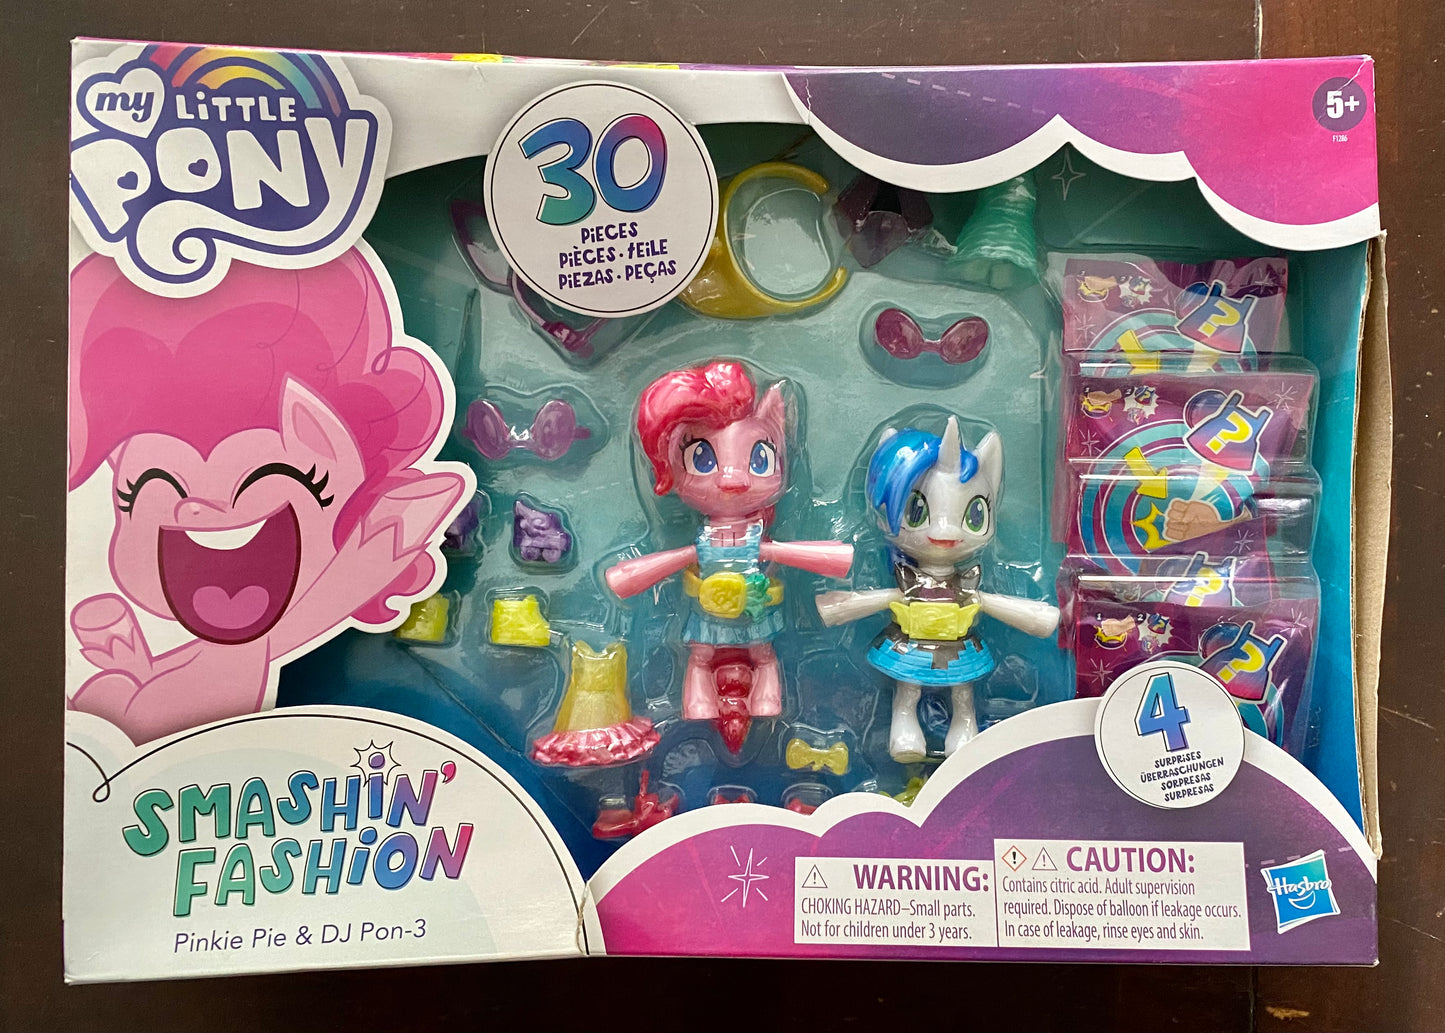 My Little Pony Smashin’ Fashion Pinkie Pie & DJ Pon-3 807826